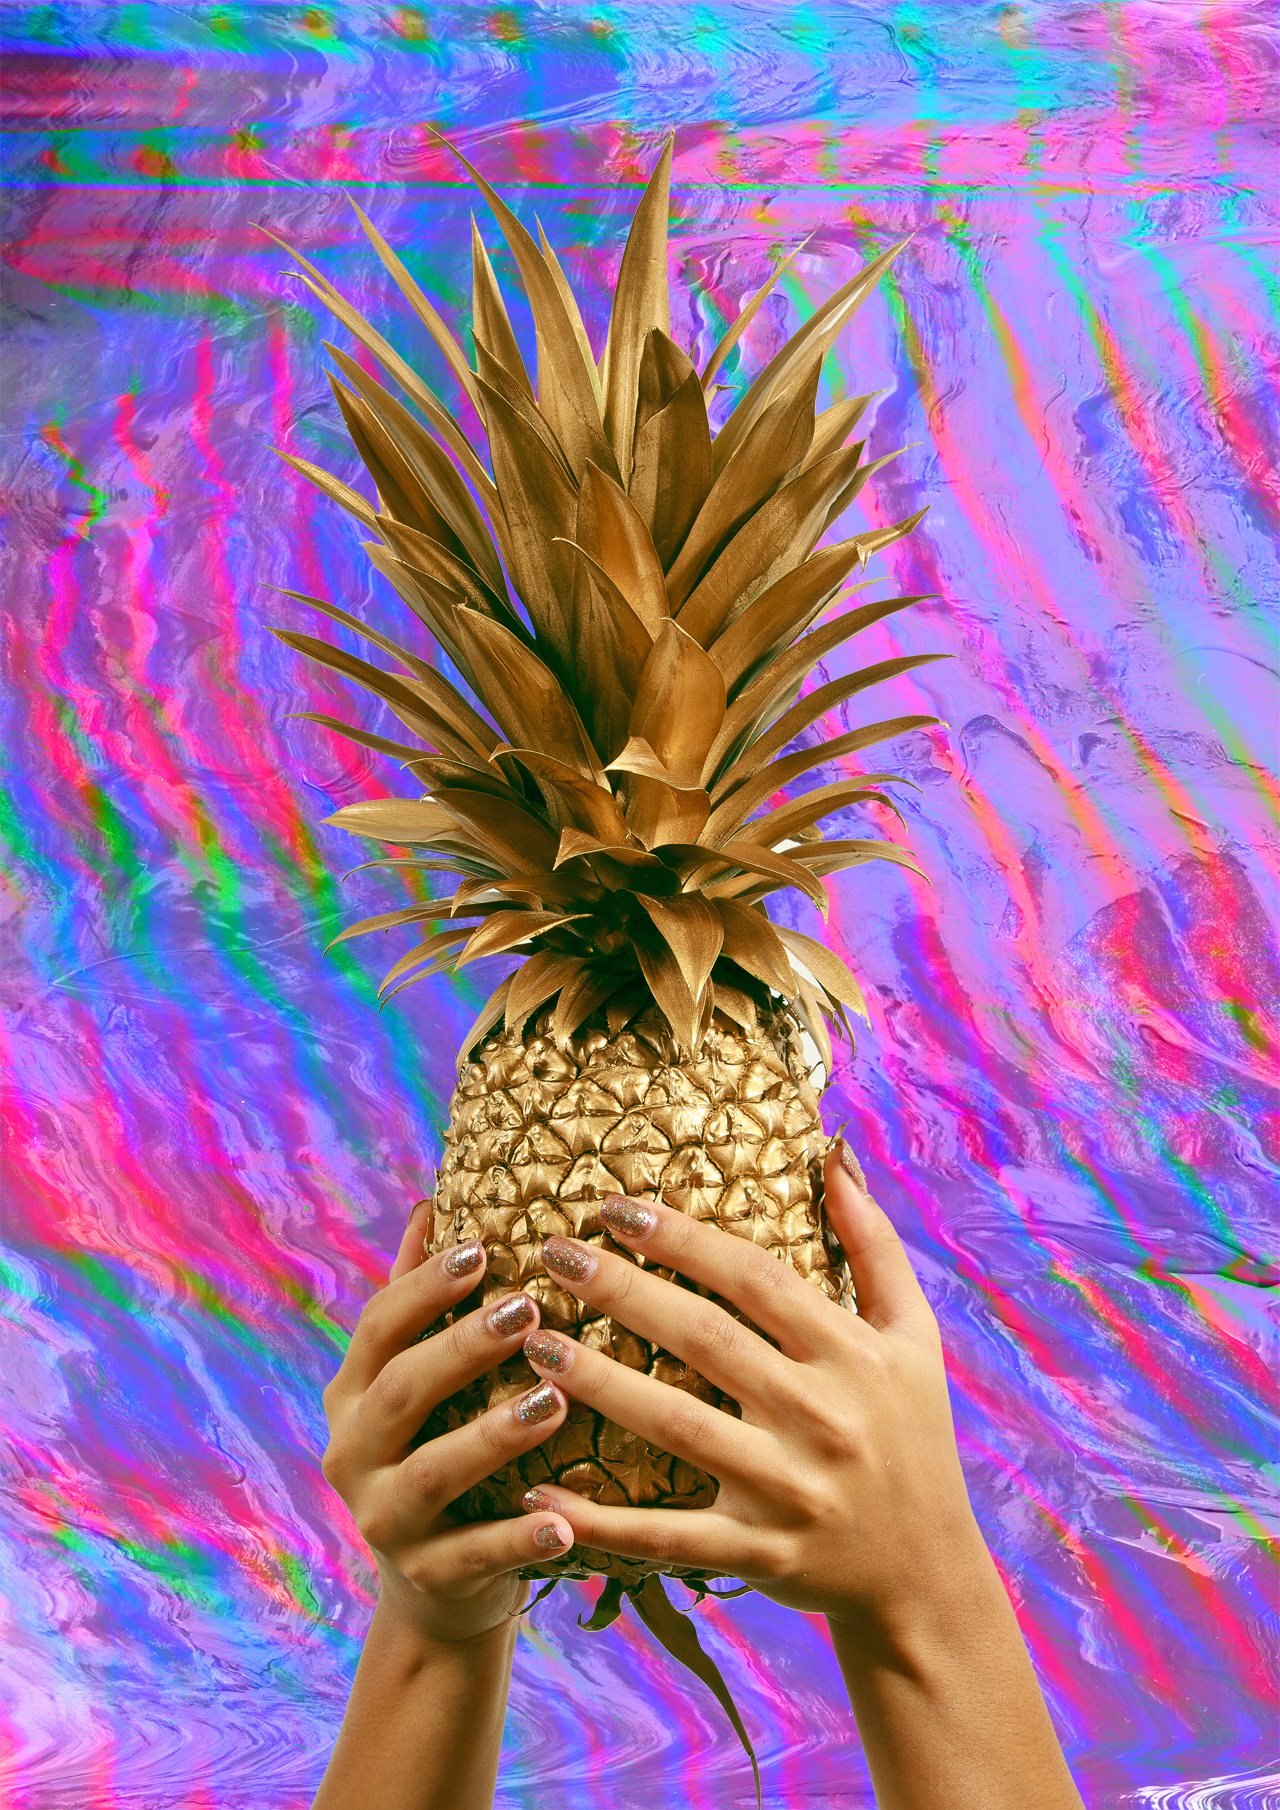 all hail pineapple v2.jpg